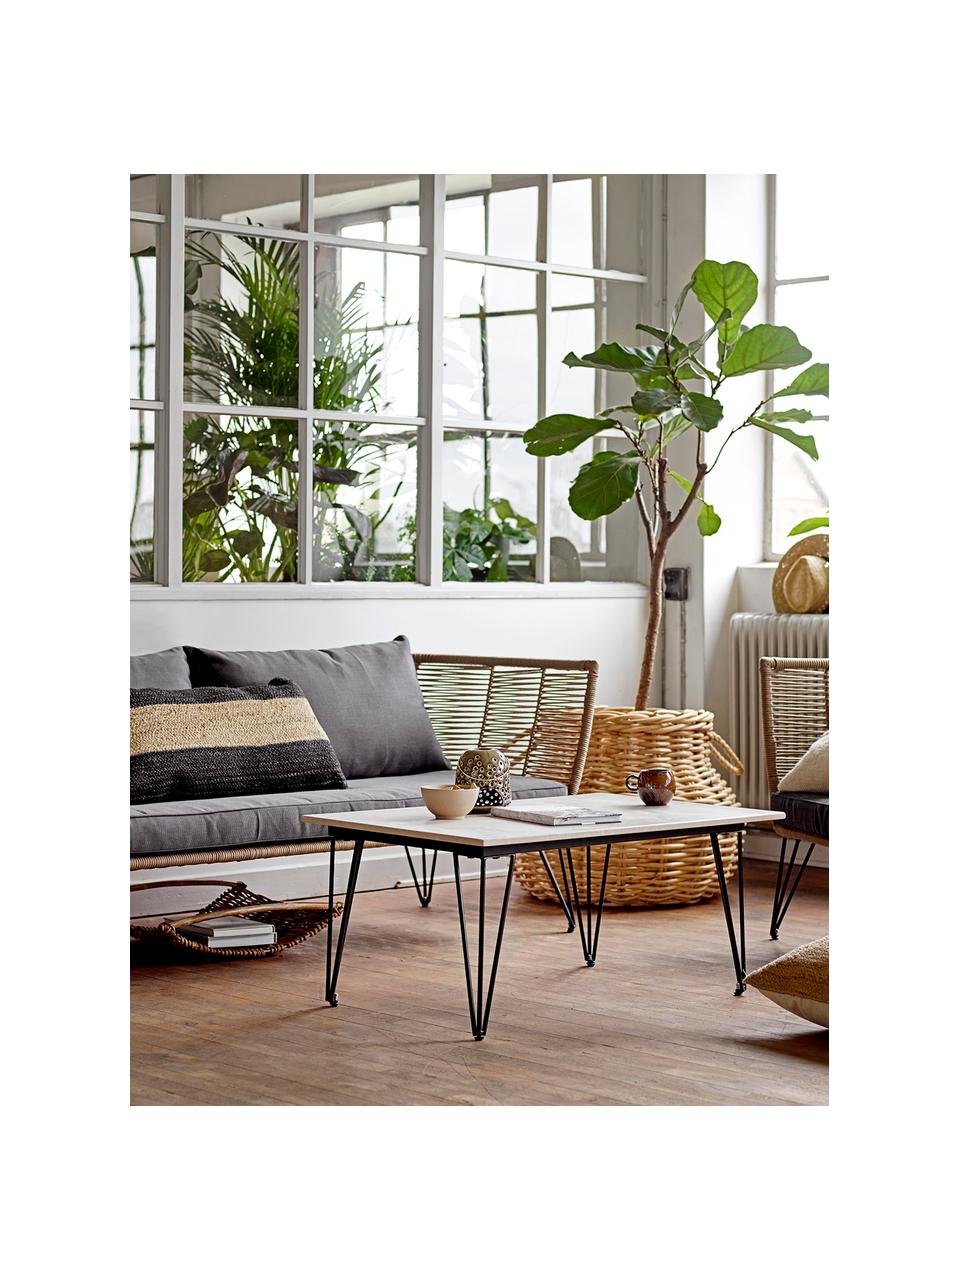 Garten-Beistelltisch Mundo, Tischplatte: Beton, Beine: Metall, beschichtet, Grau, Schwarz, B 90 x T 60 cm